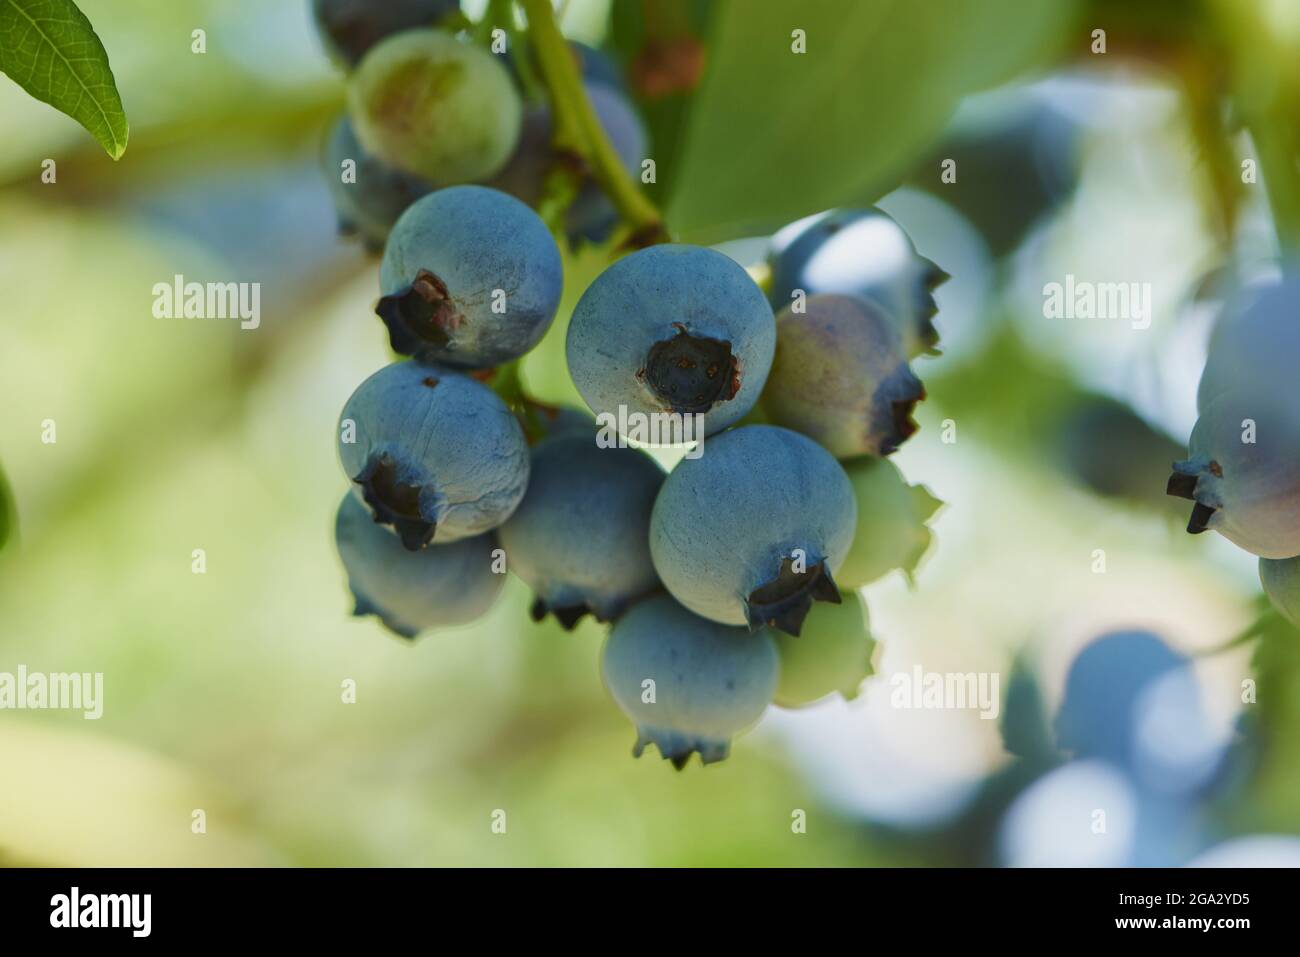 Nahaufnahme von reifen nördlichen Hochbusch-Heidelbeeren oder huckleberry (Vaccinium corymbosum) im Sommer; Oberpfalz, Bayern, Deutschland Stockfoto